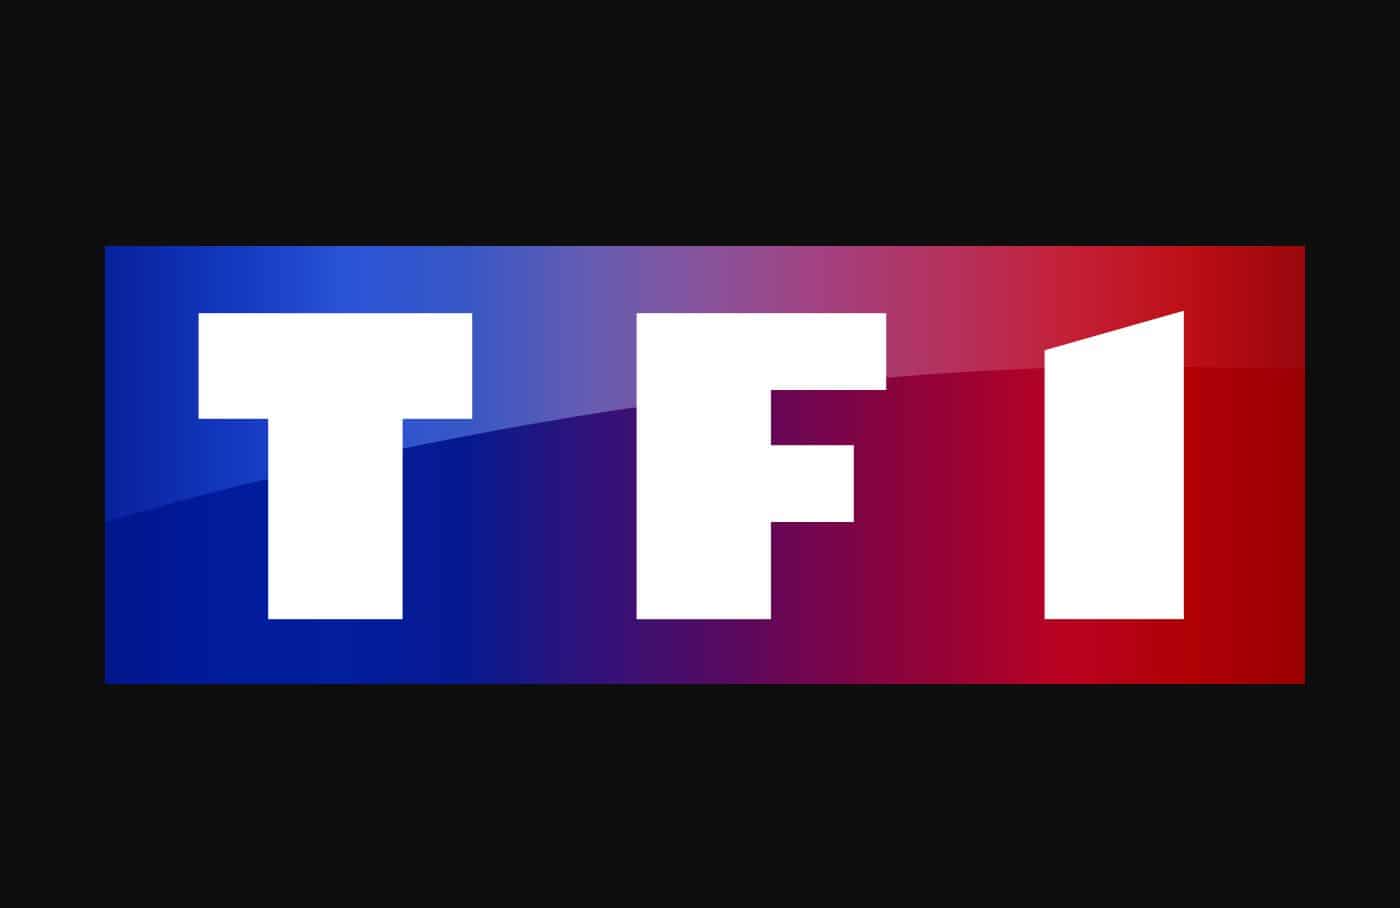 TF1 vs Free, Canal et Orange : le CSA joue les médiateurs ... - 1400 x 908 jpeg 13kB